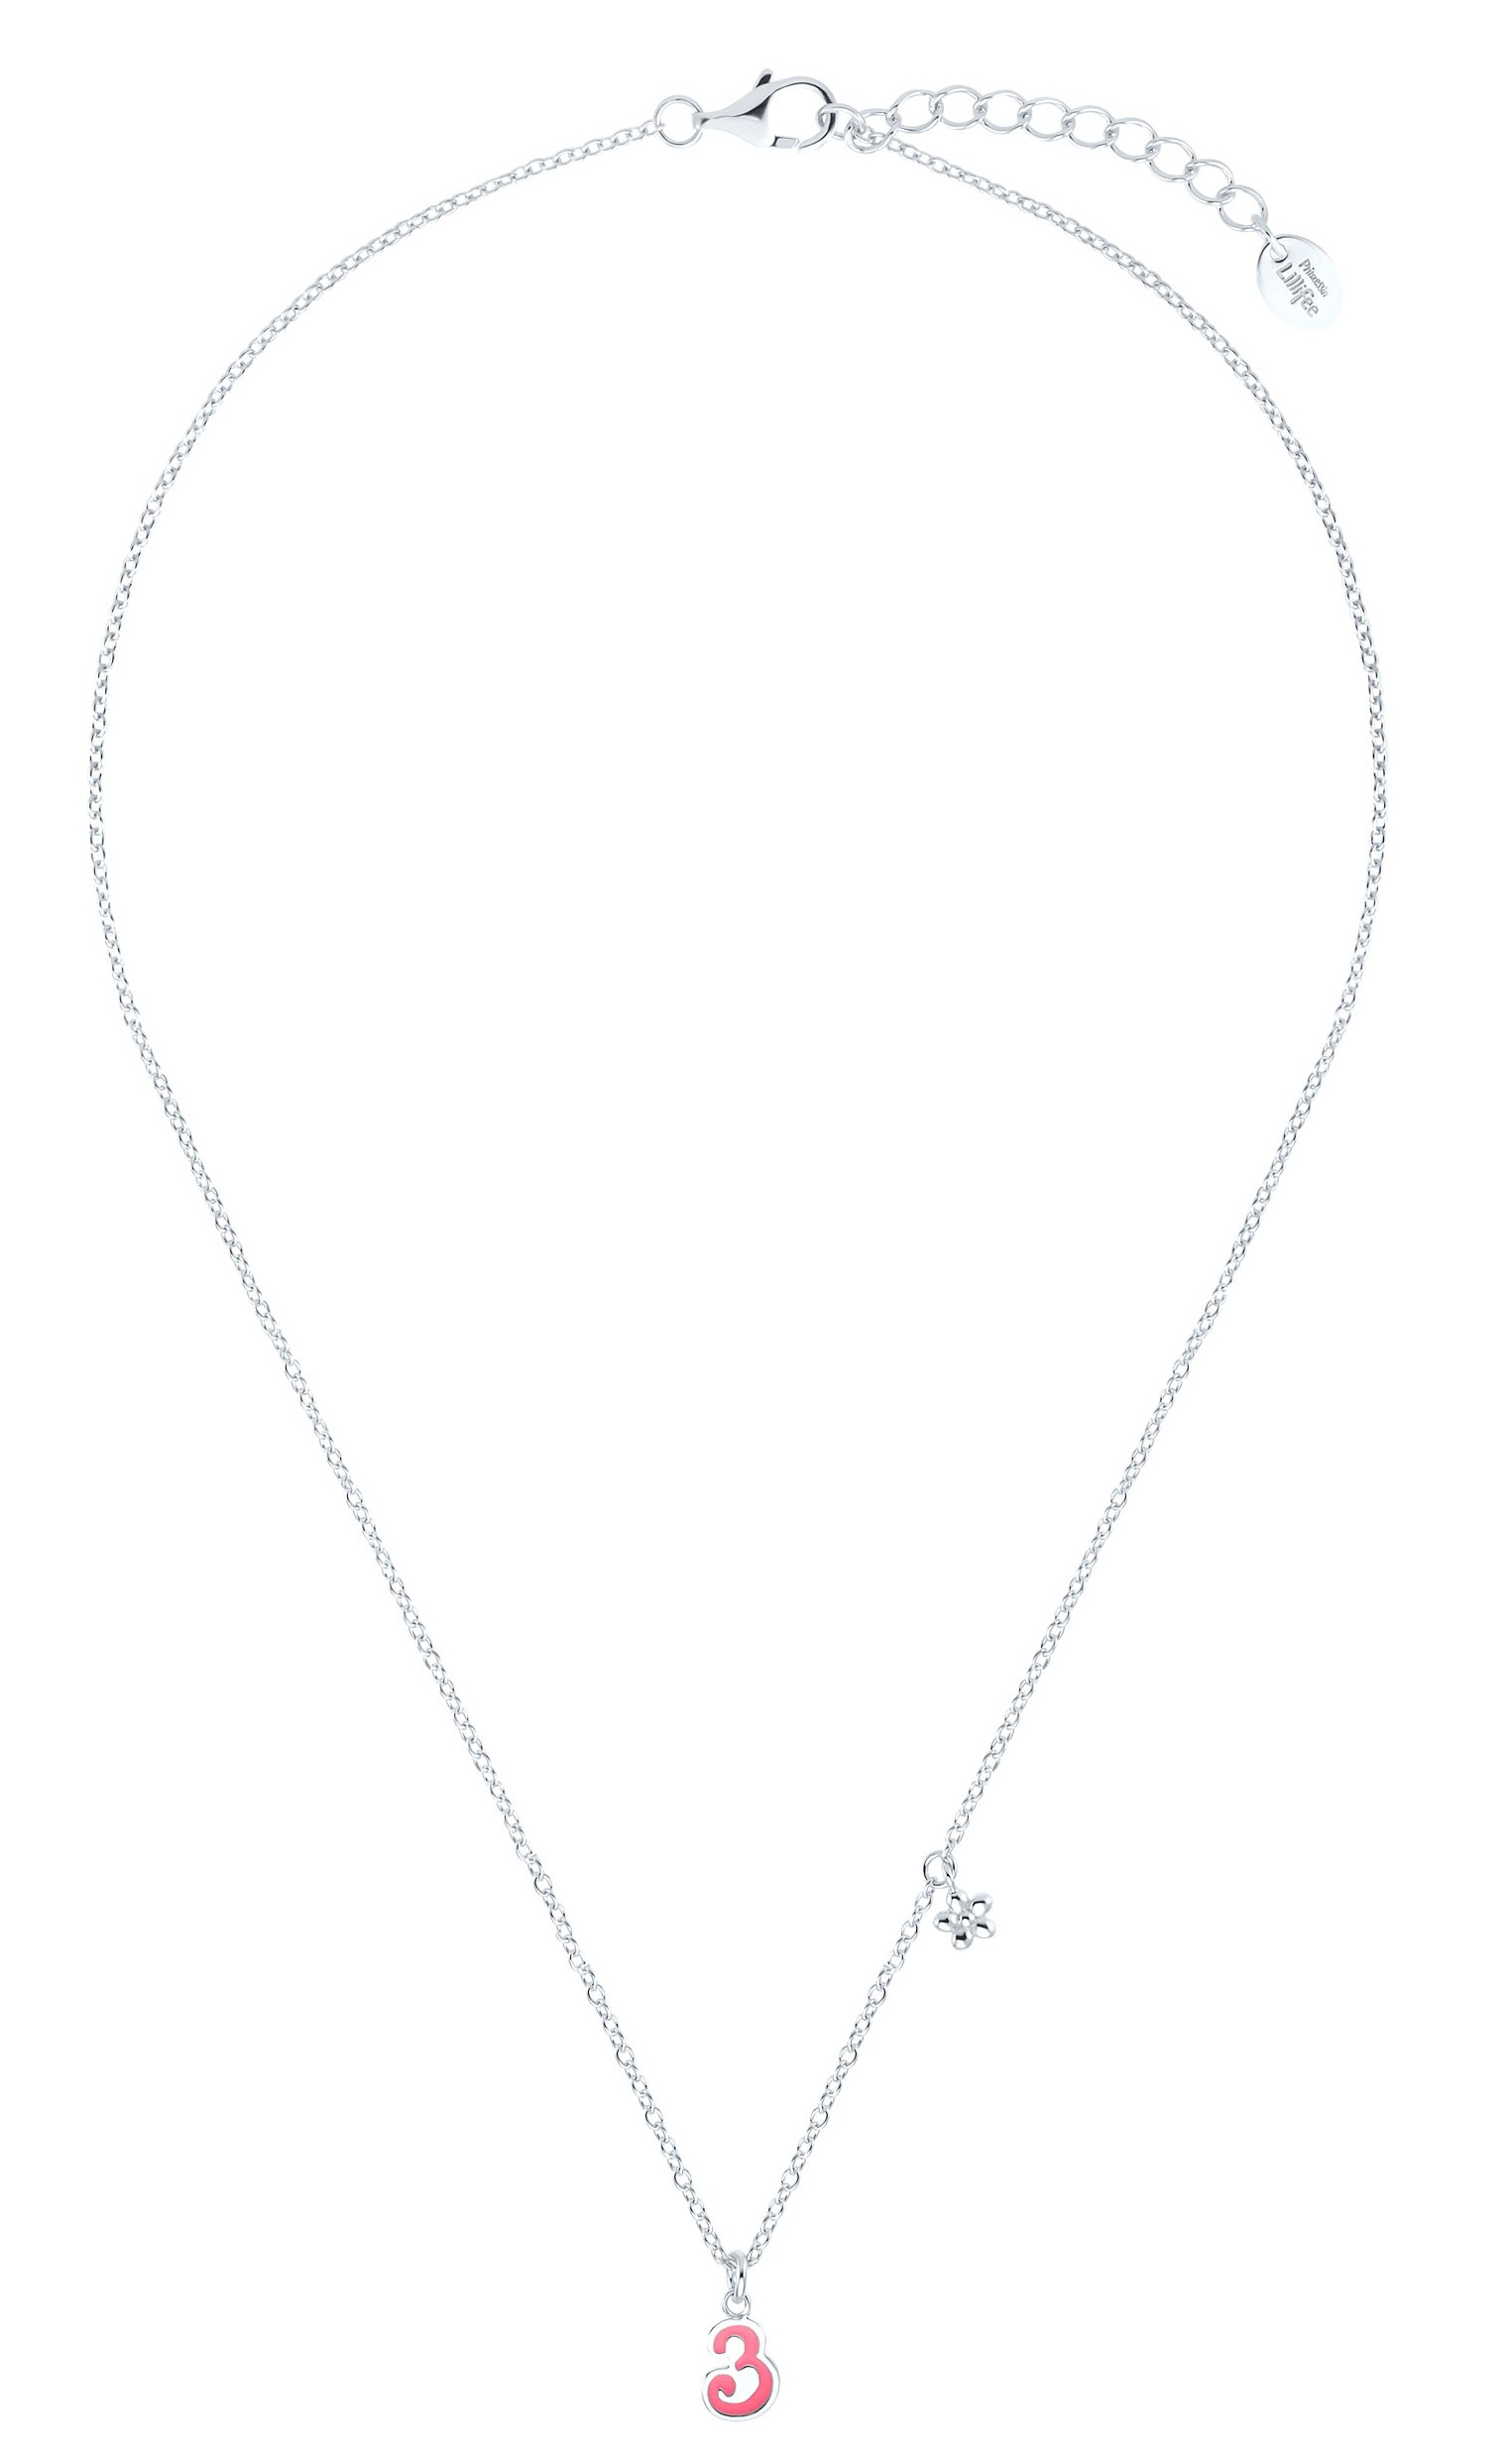 Lillifee Halskette 2035975 Silber 925/- mit Anhänger Blume und Zahl 3